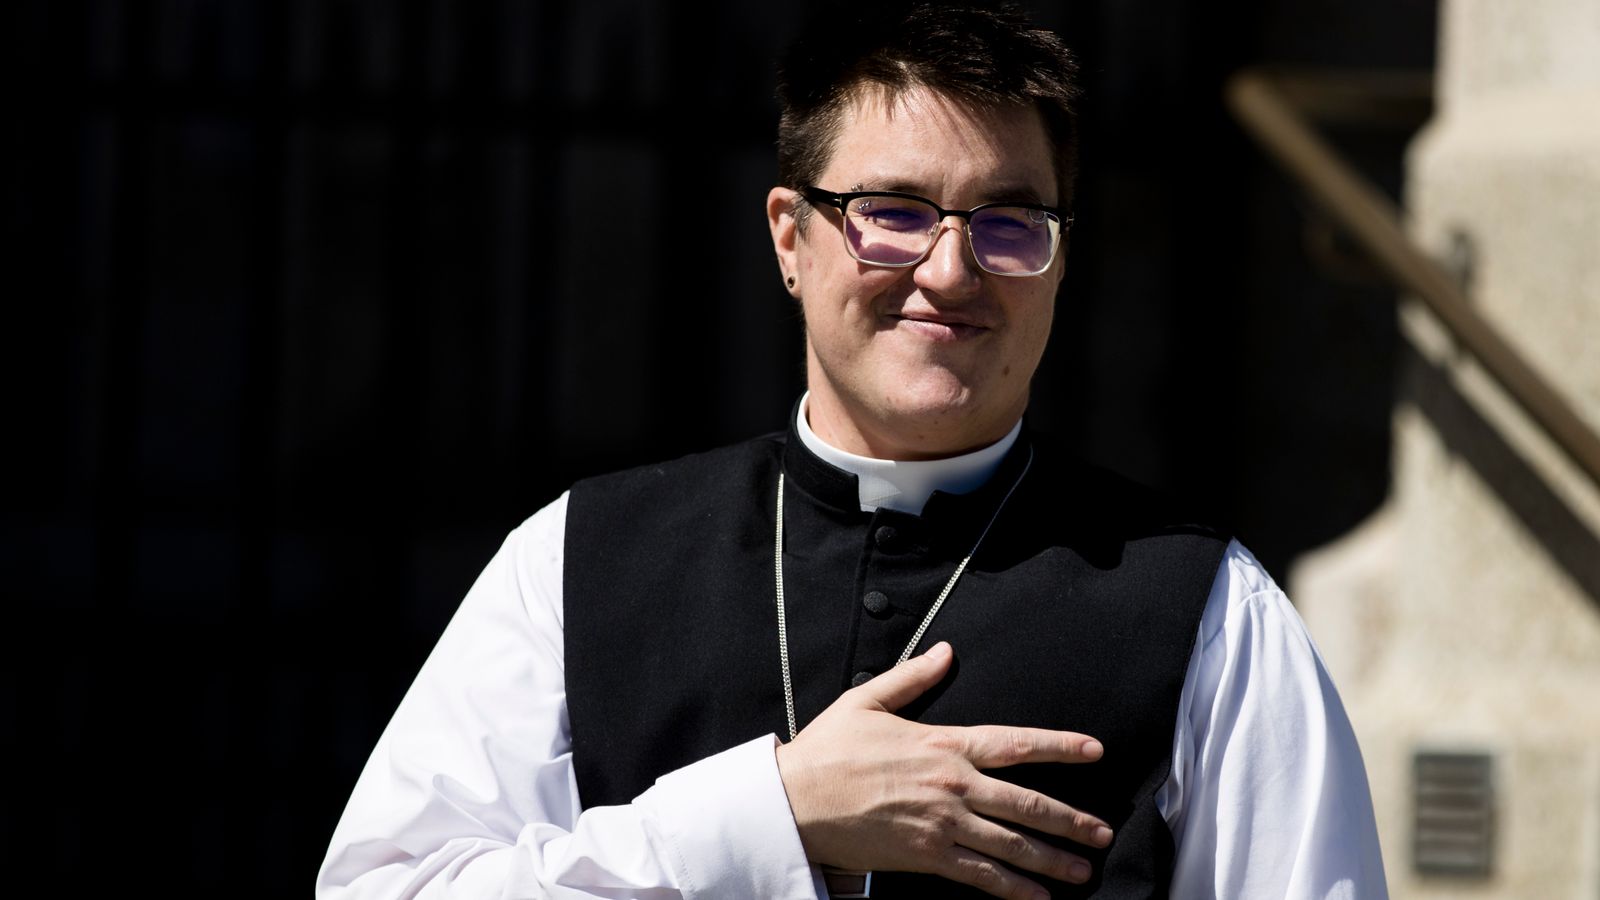 епископ трансгендер